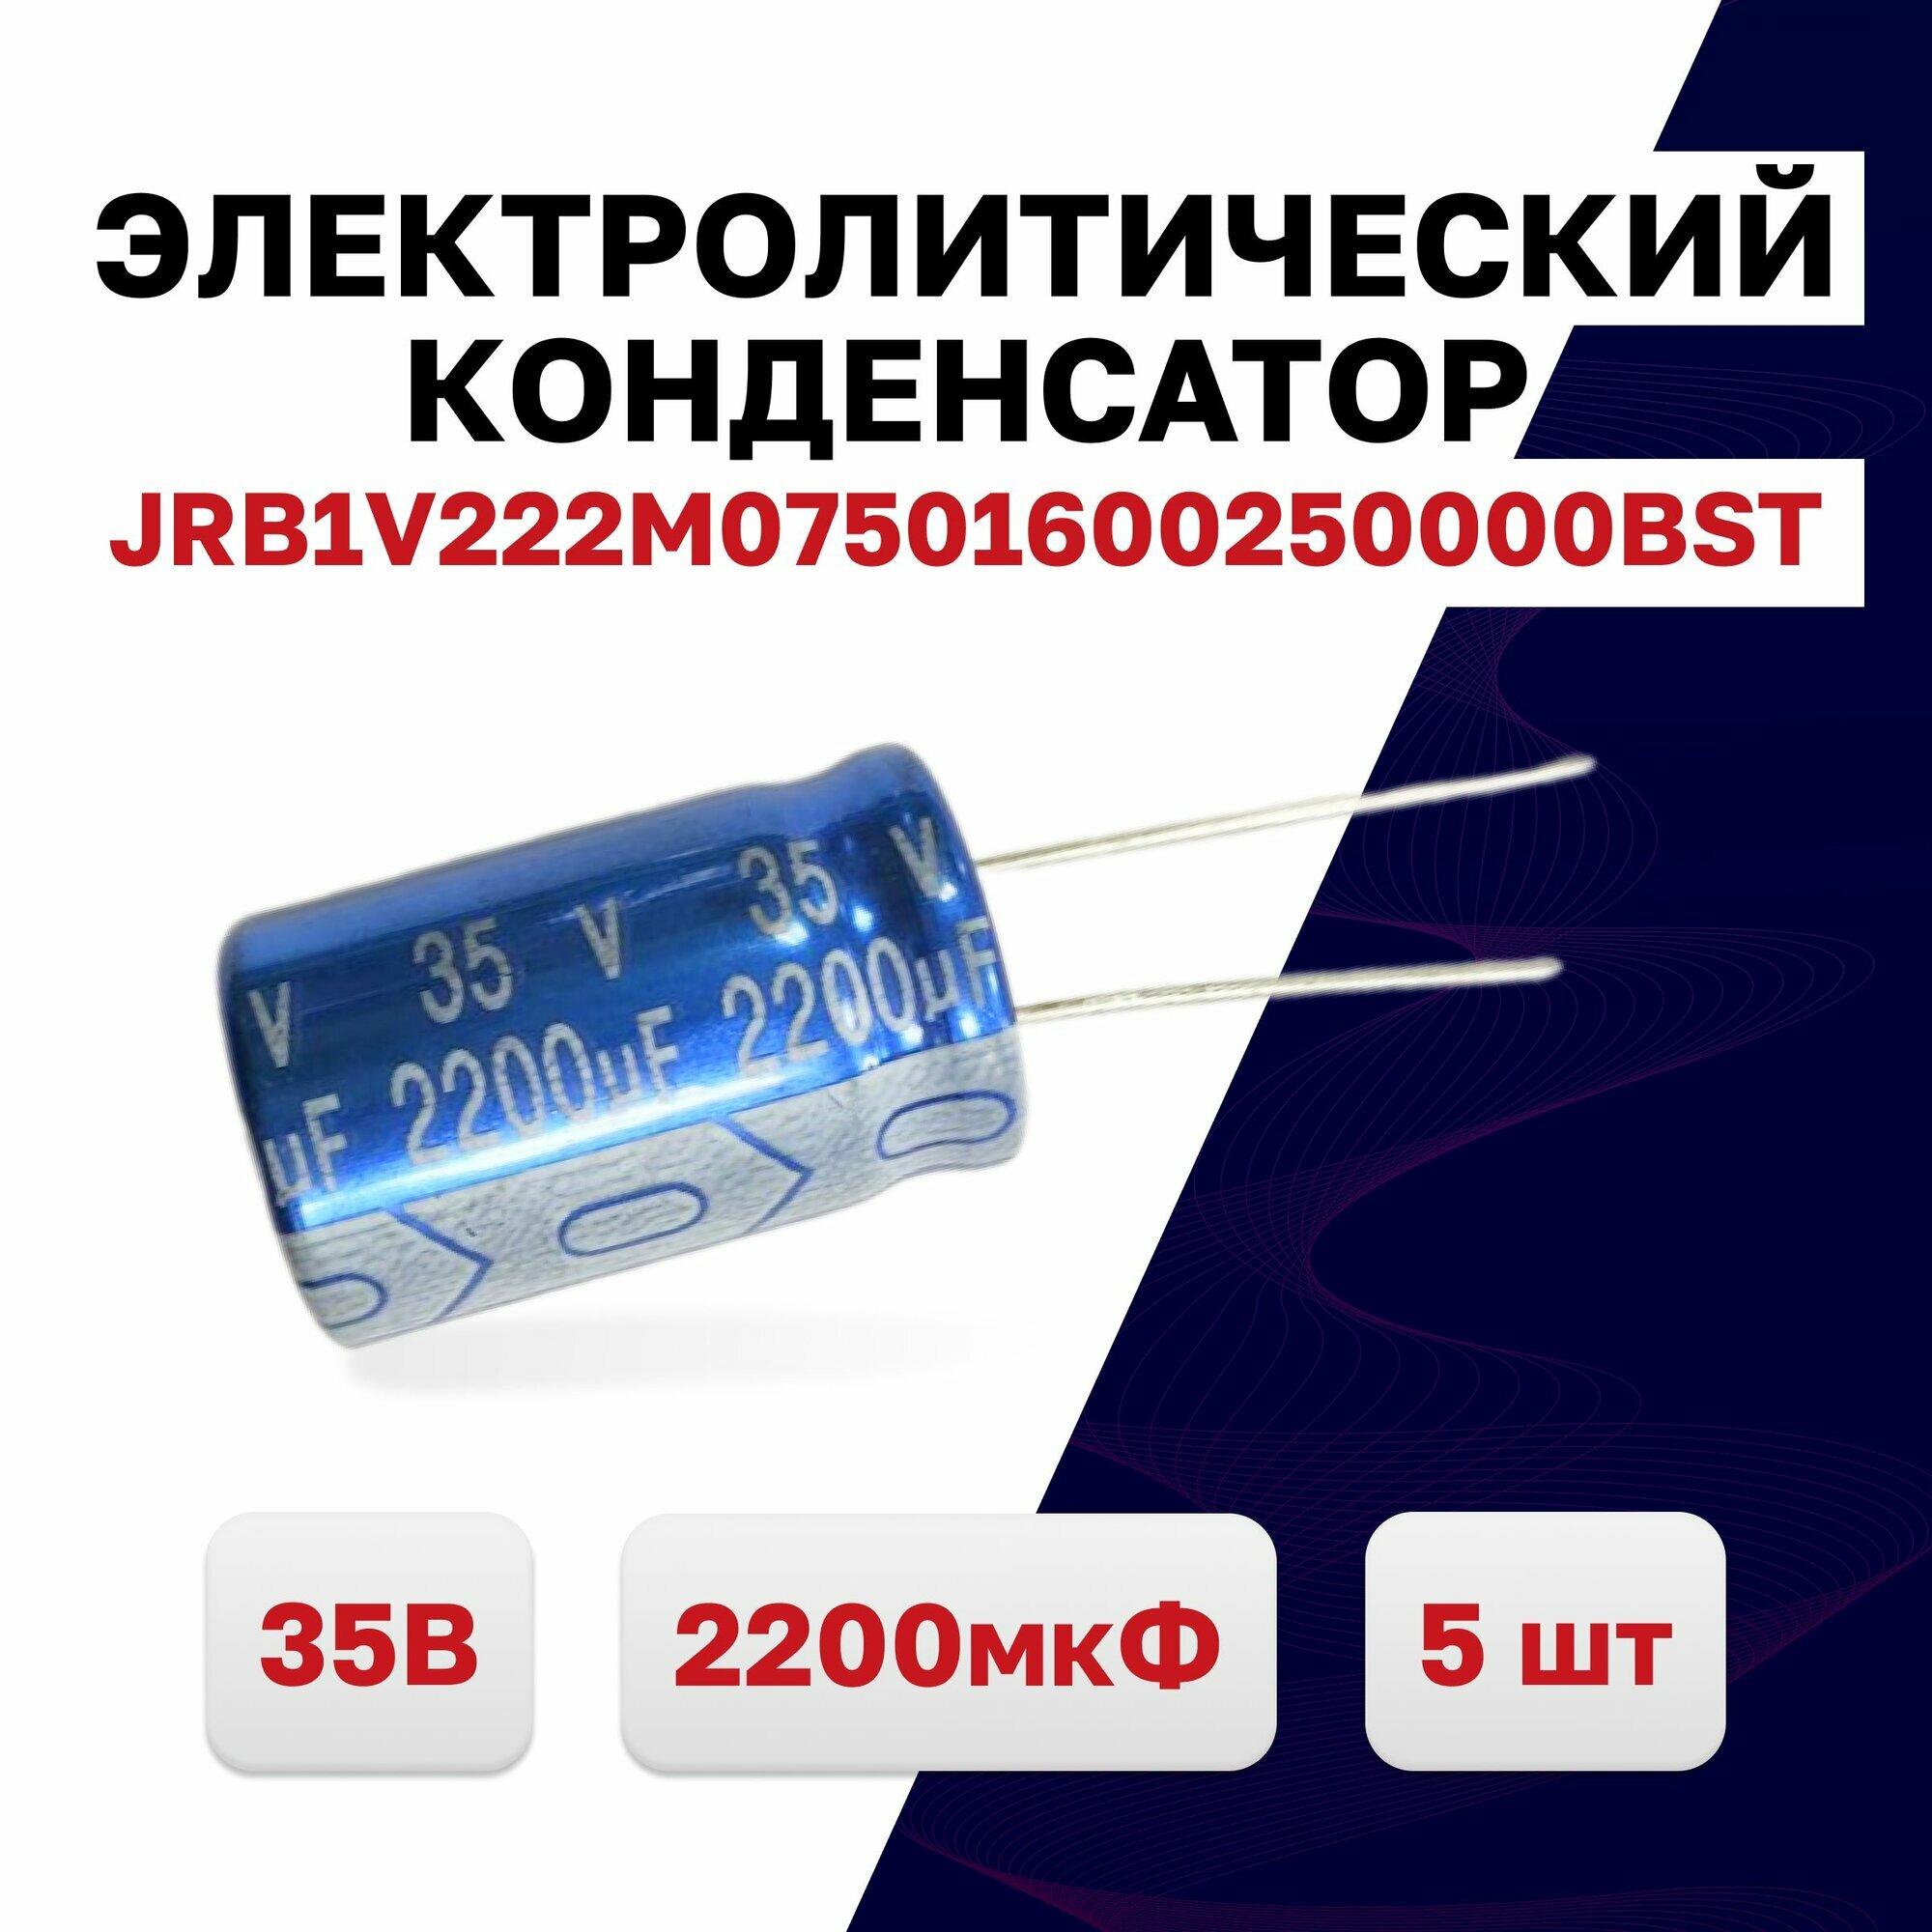 JRB1V222M07501600250000BST, конденсатор электролитический 35В 2200мкФ 105C, 5 шт.